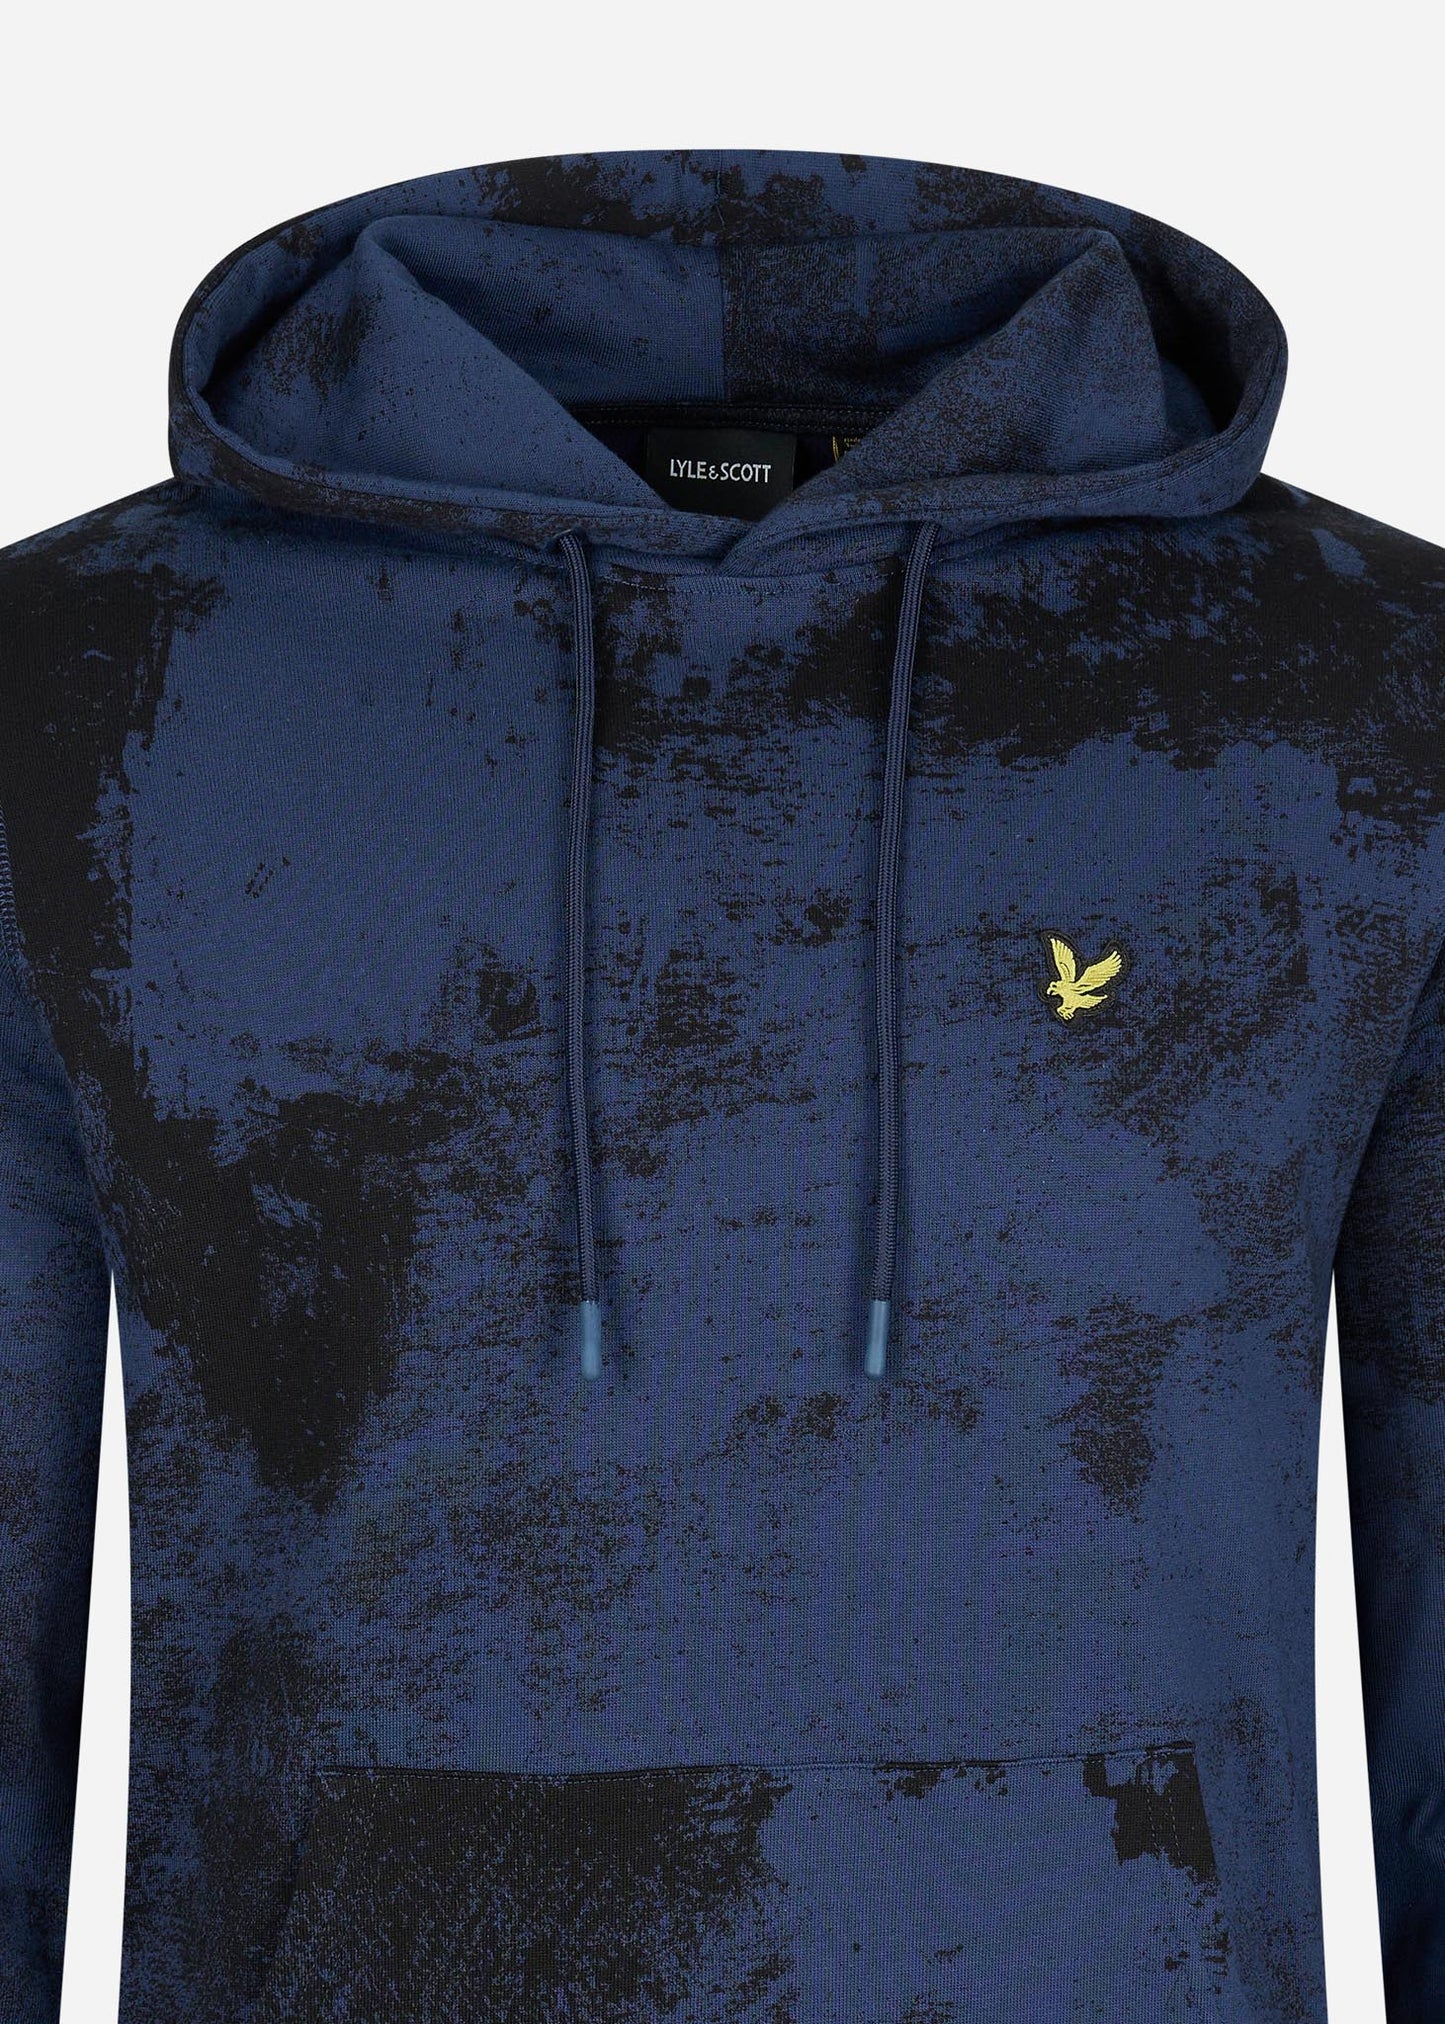 Erosion print hoodie - navy